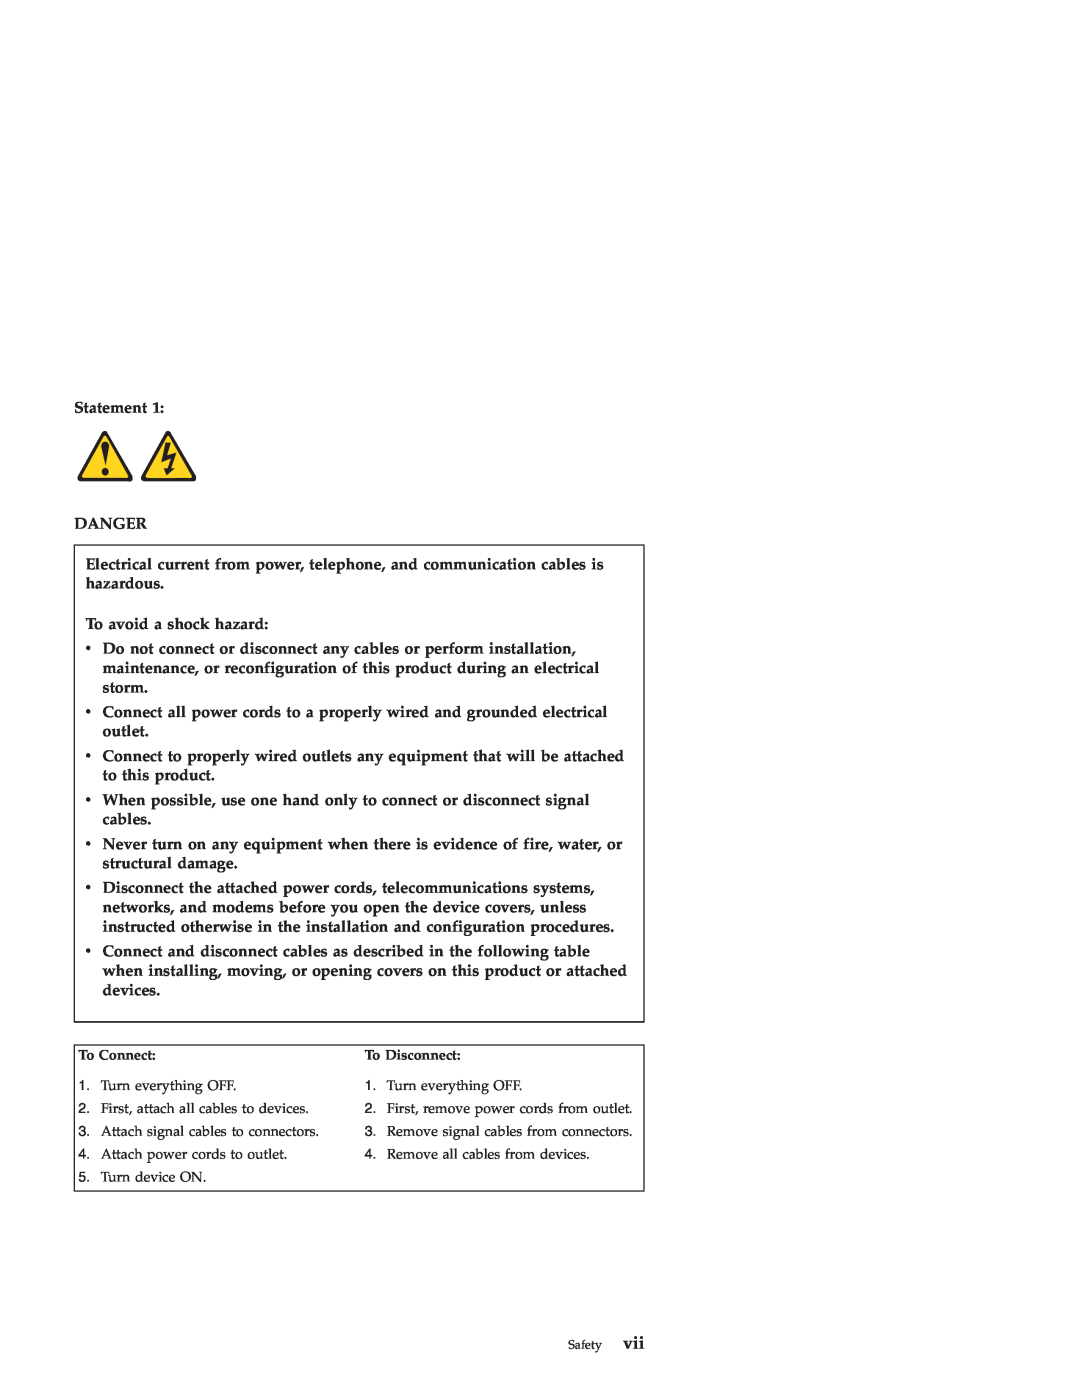 IBM Nortel 10 manual Statement DANGER, To avoid a shock hazard 